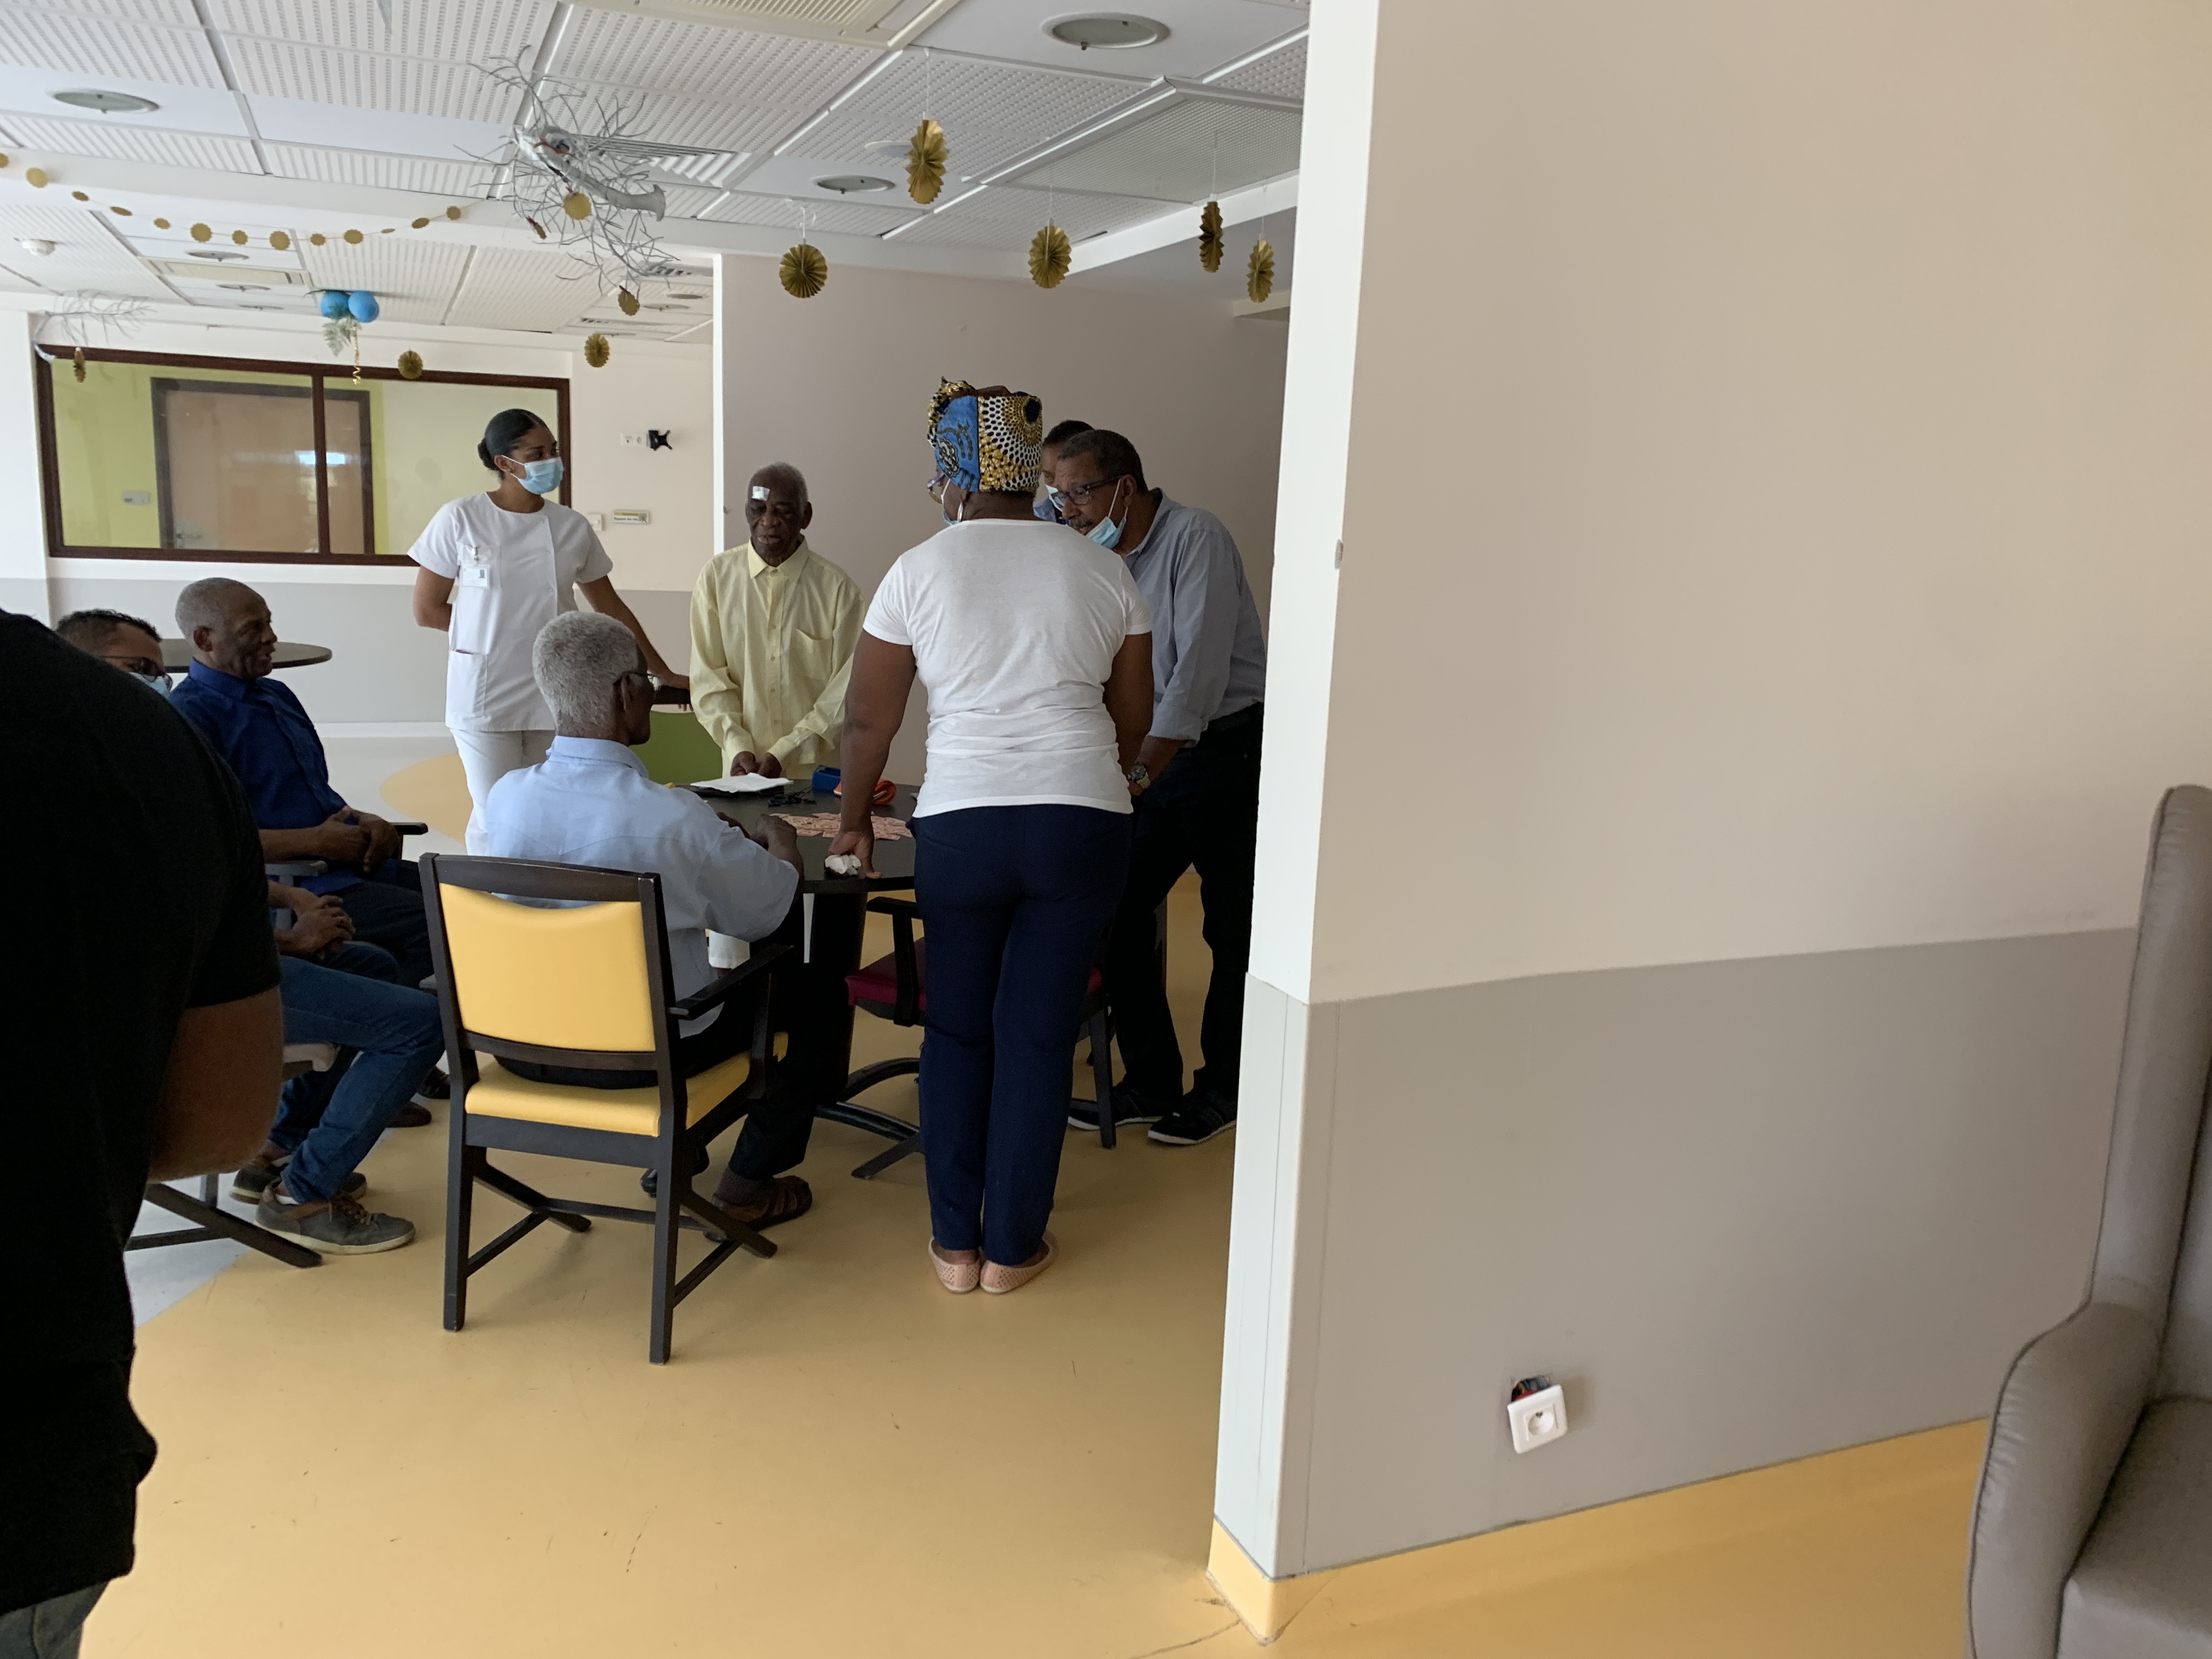     Séniors : le centre hospitalier gérontologique en fête pour la Semaine Bleue

